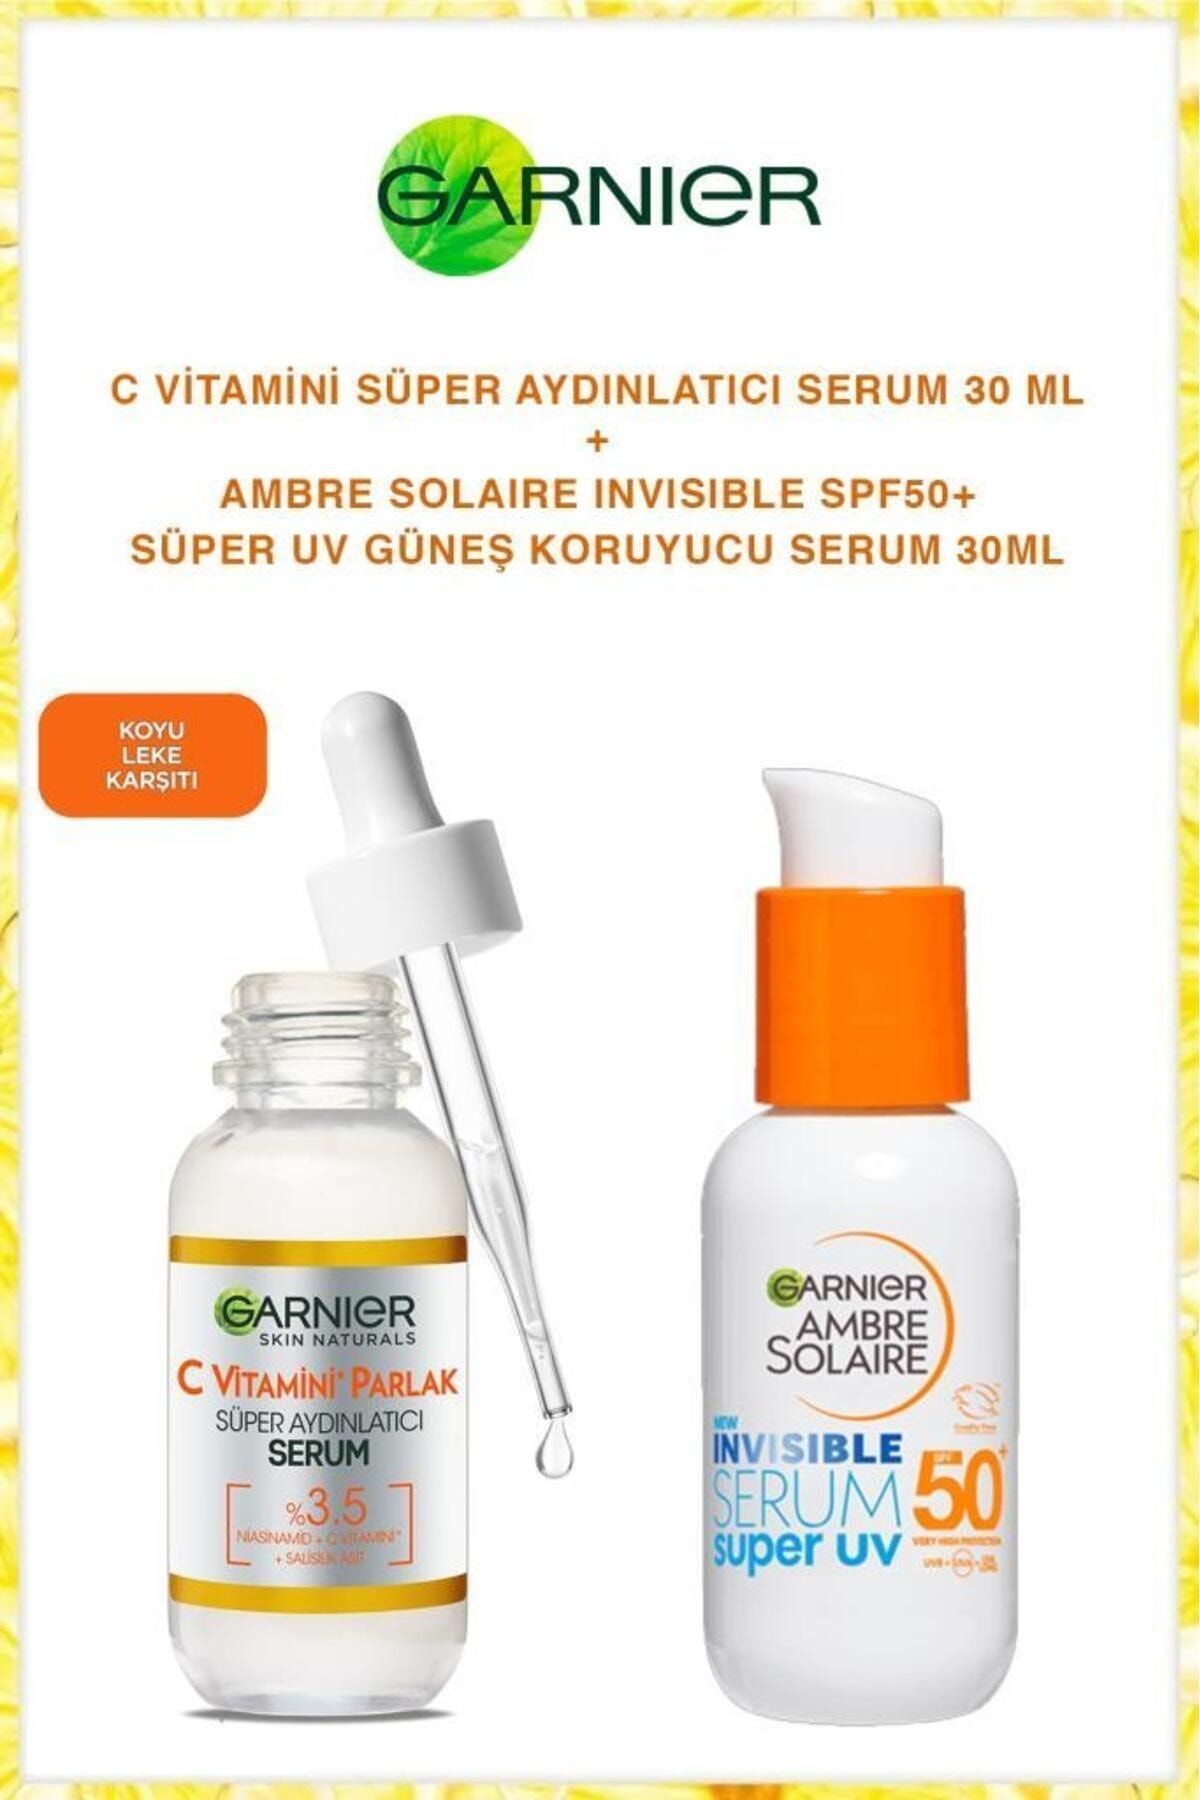 Garnier C Vitamin Aydınlatıcı Serum SPF50 Seramid Güneş Koruması Cilt Bakım Seti